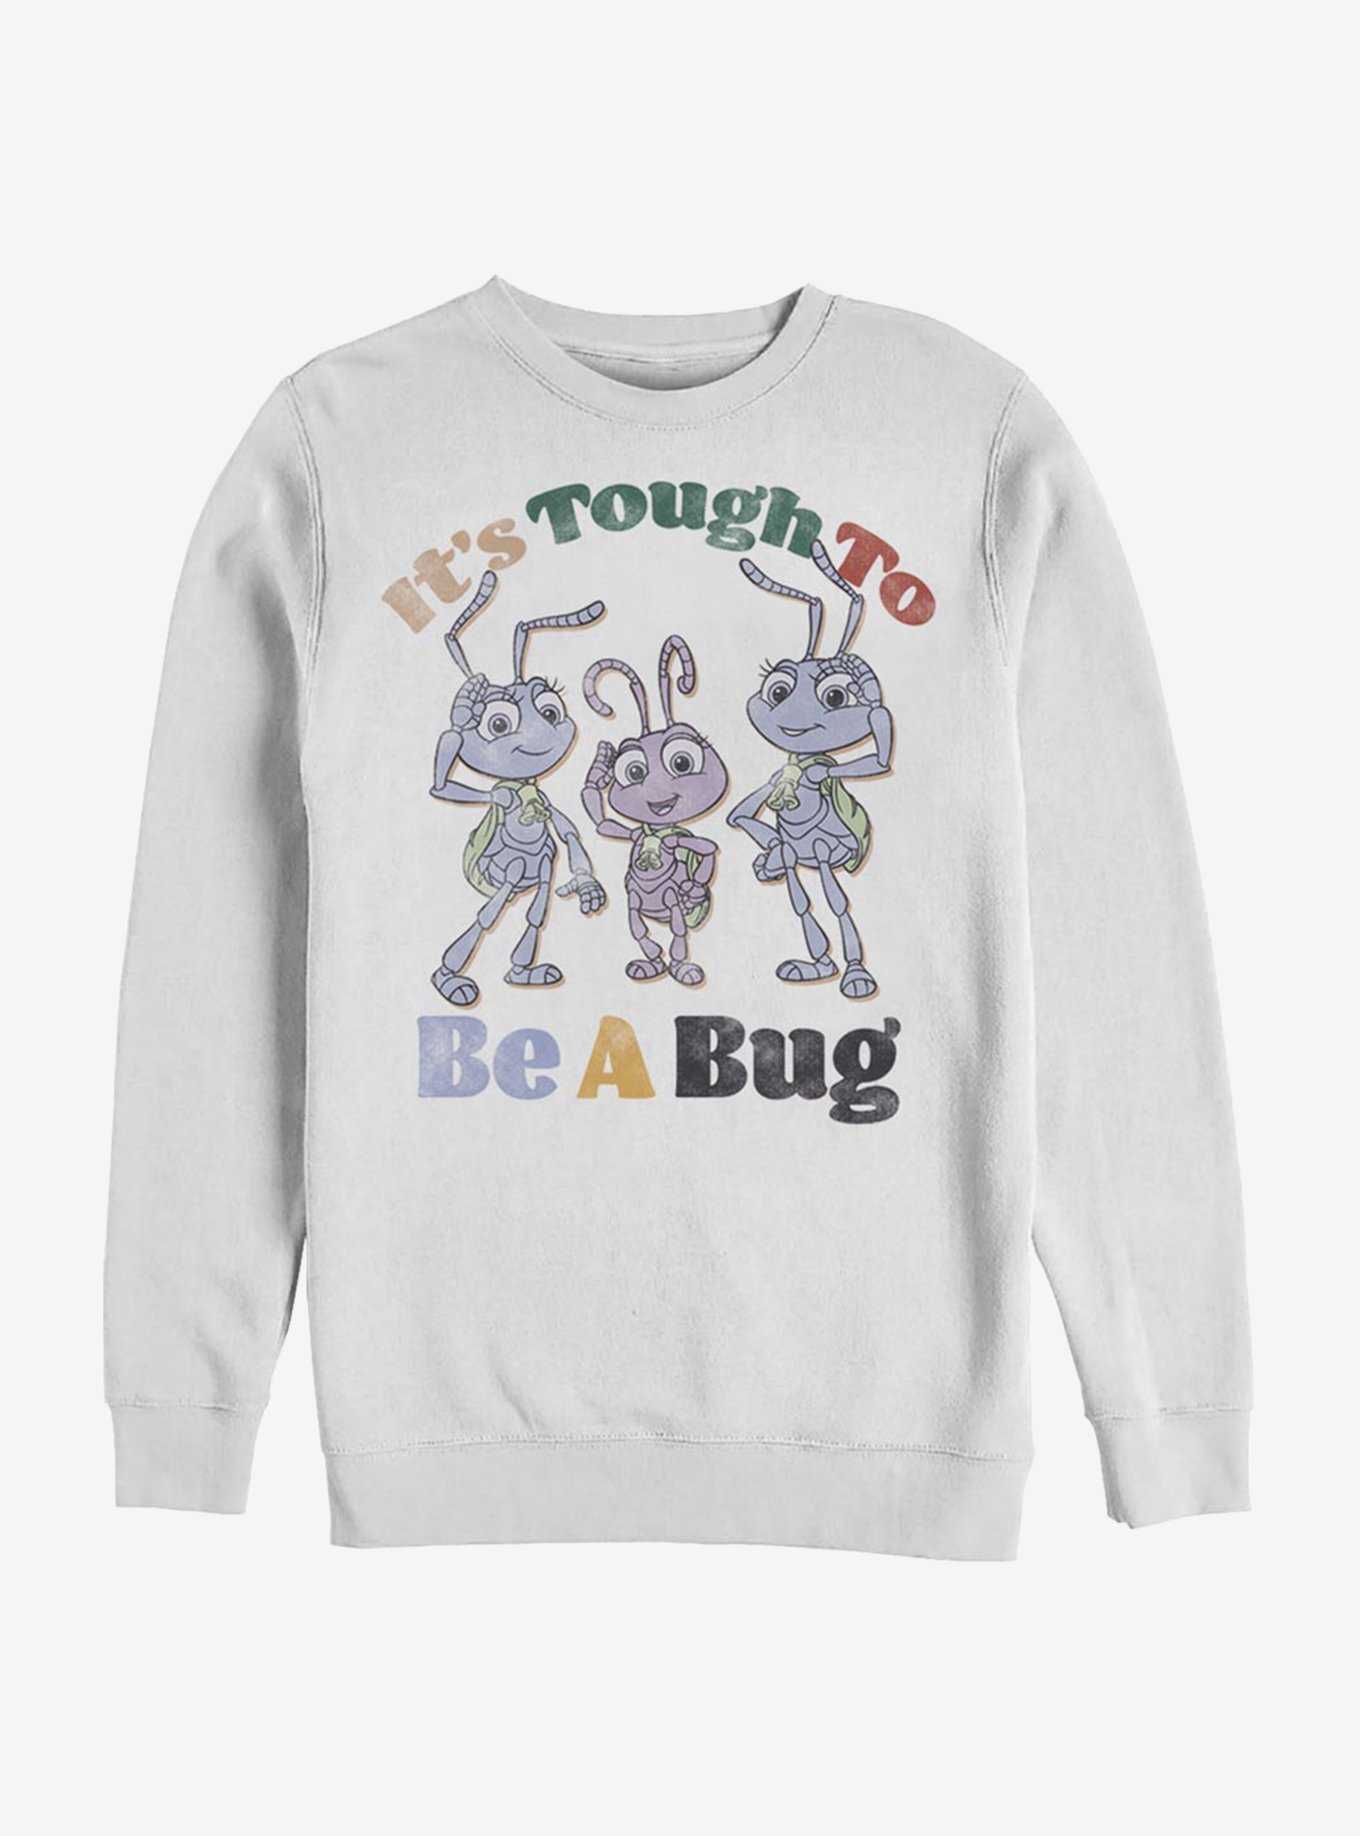 Disney Pixar A Bug's Life Big And Small Sweatshirt, , hi-res